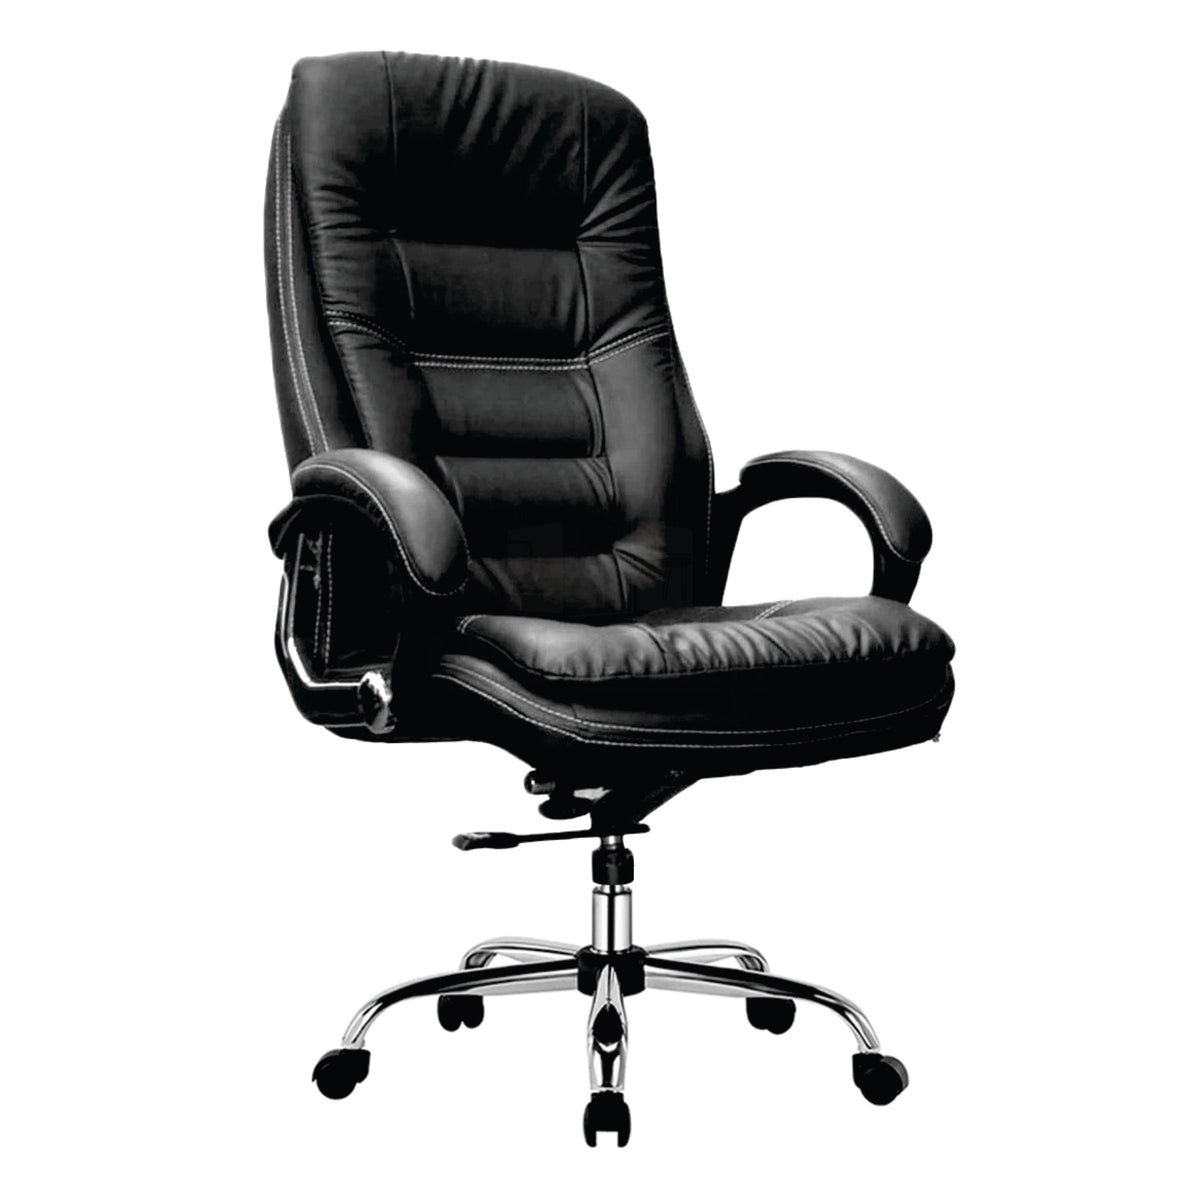 Ergonomic Mesh Office Chair with Synchro-Tilt